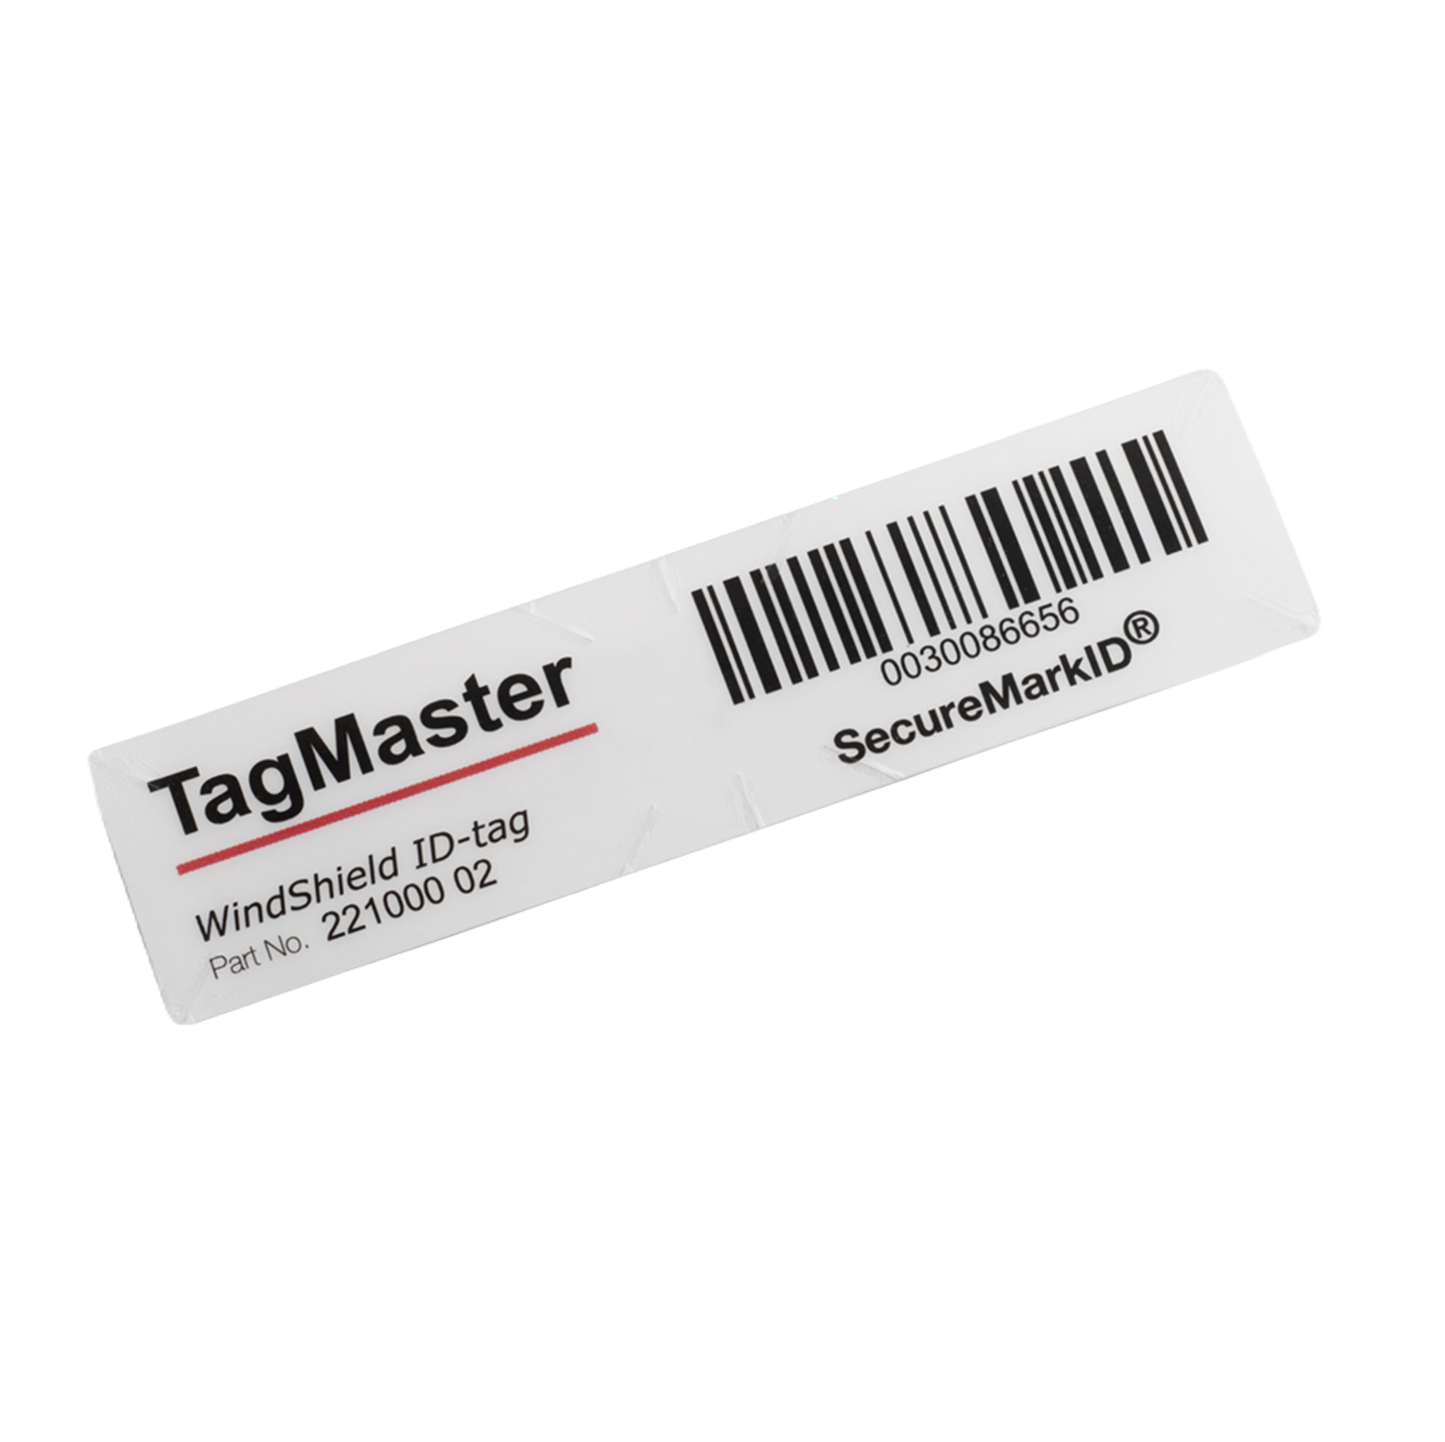 TagMaster SecureMarkID WindShield ID-Tag